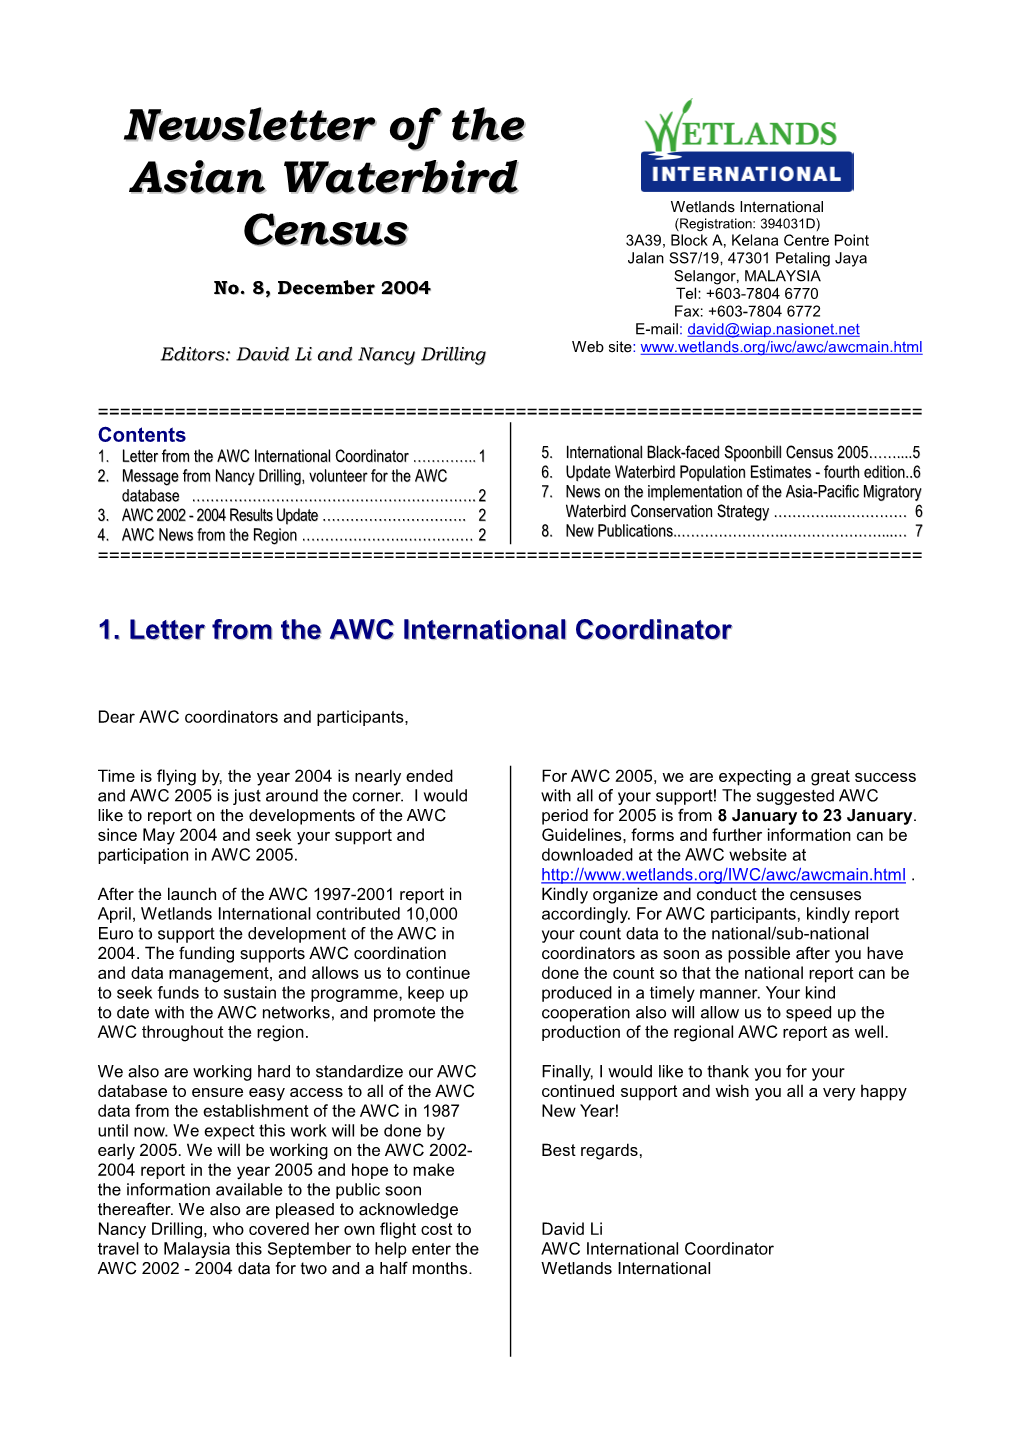 AWC Newsletter, December 2004